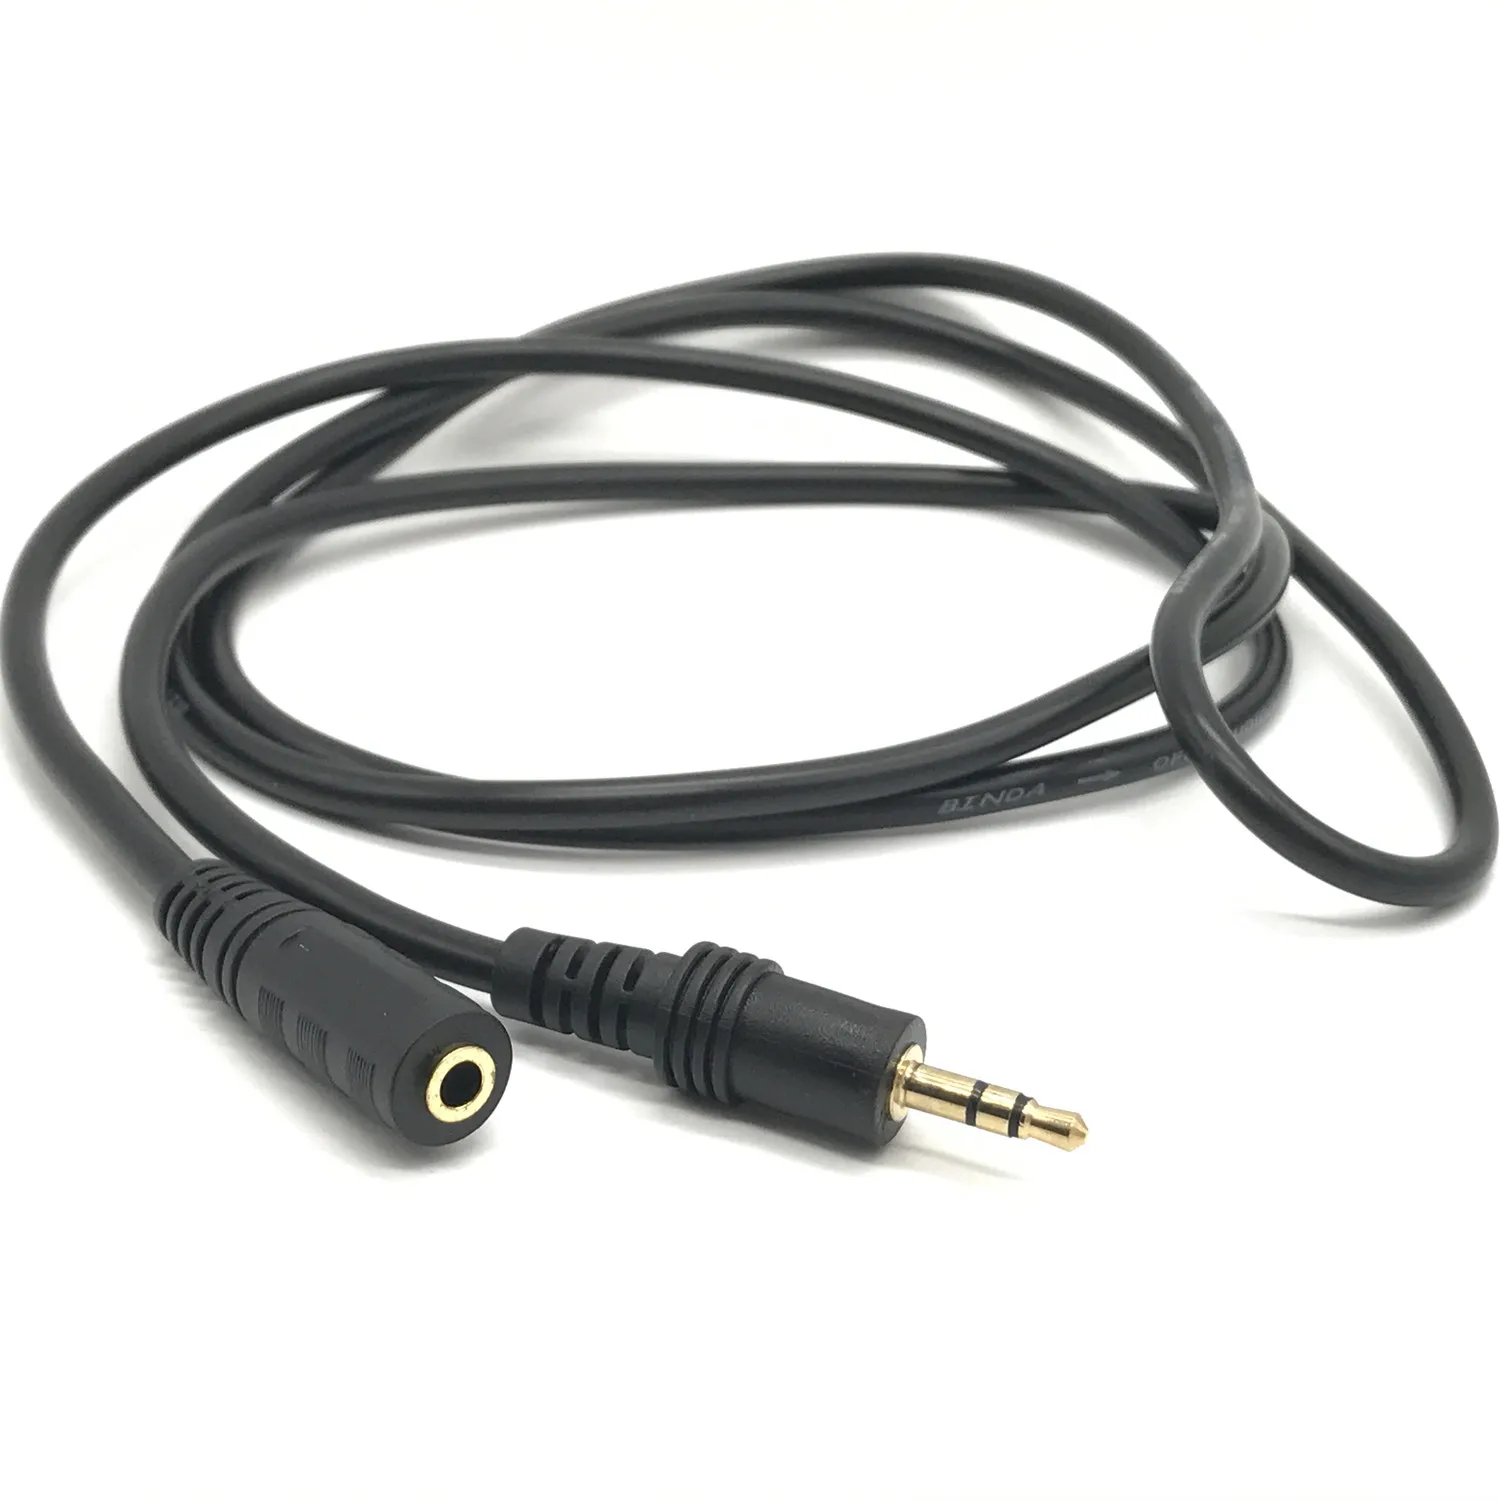 AUX кабель 3 5 мм аудиокабель удлинитель штырь гнездо для наушников автомобиля